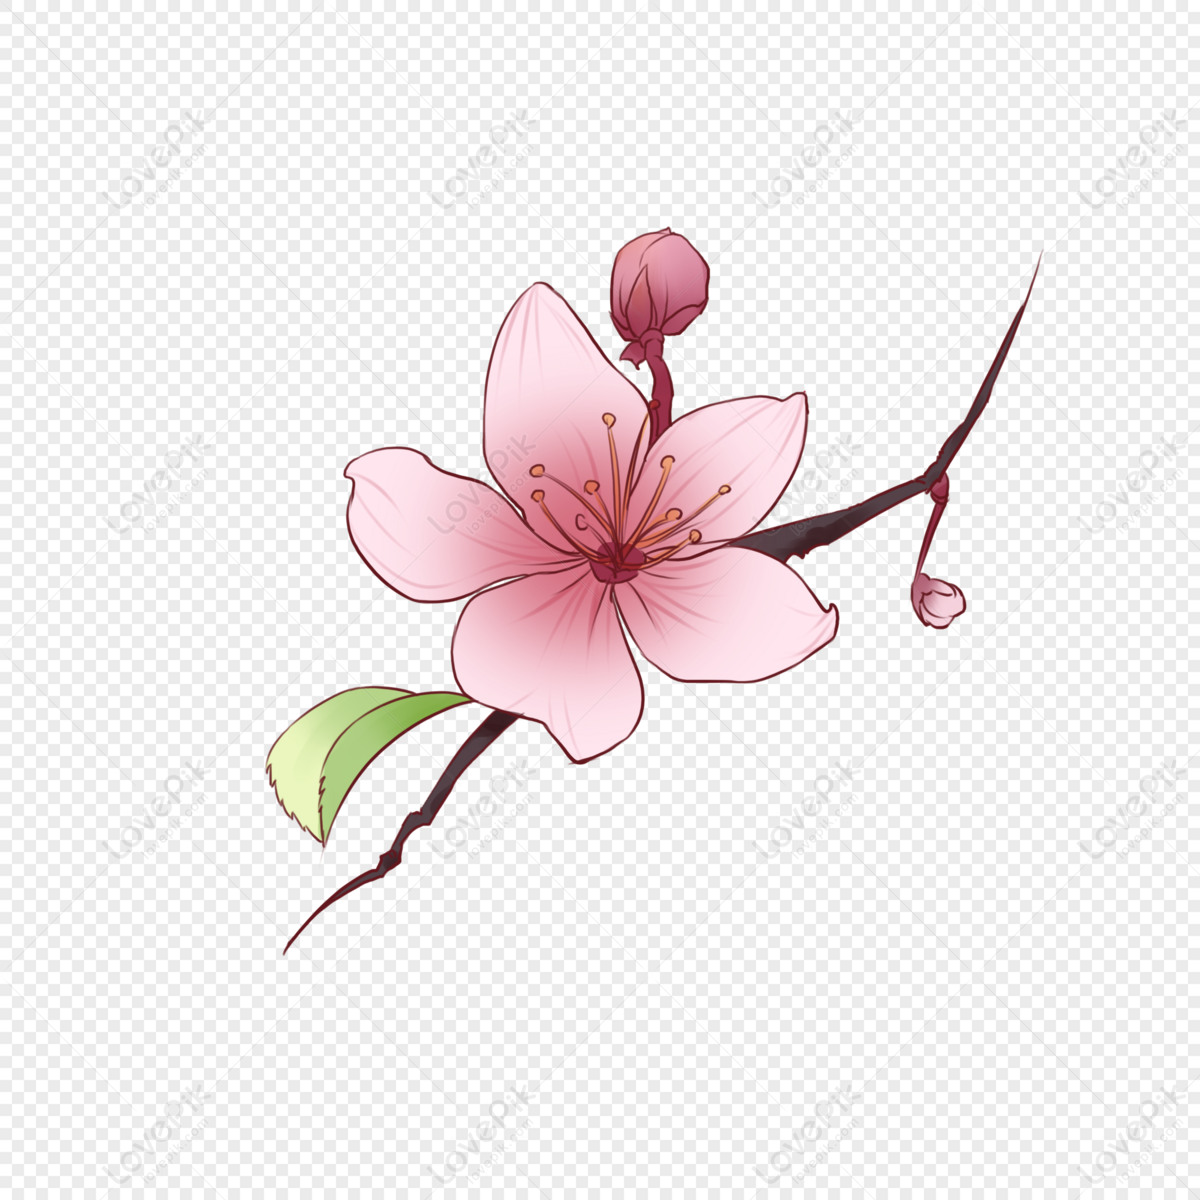 Bông hoa đào tỏa hương thơm ngát và màu hồng tươi tắn là biểu tượng của sự phồn thịnh và may mắn. Những bó hoa đào sẽ là lựa chọn hoàn hảo để trang trí không gian trong những dịp đặc biệt. Cùng xem những hình ảnh về bông hoa đào để thêm phần sức sống và màu sắc cho ngày của bạn.